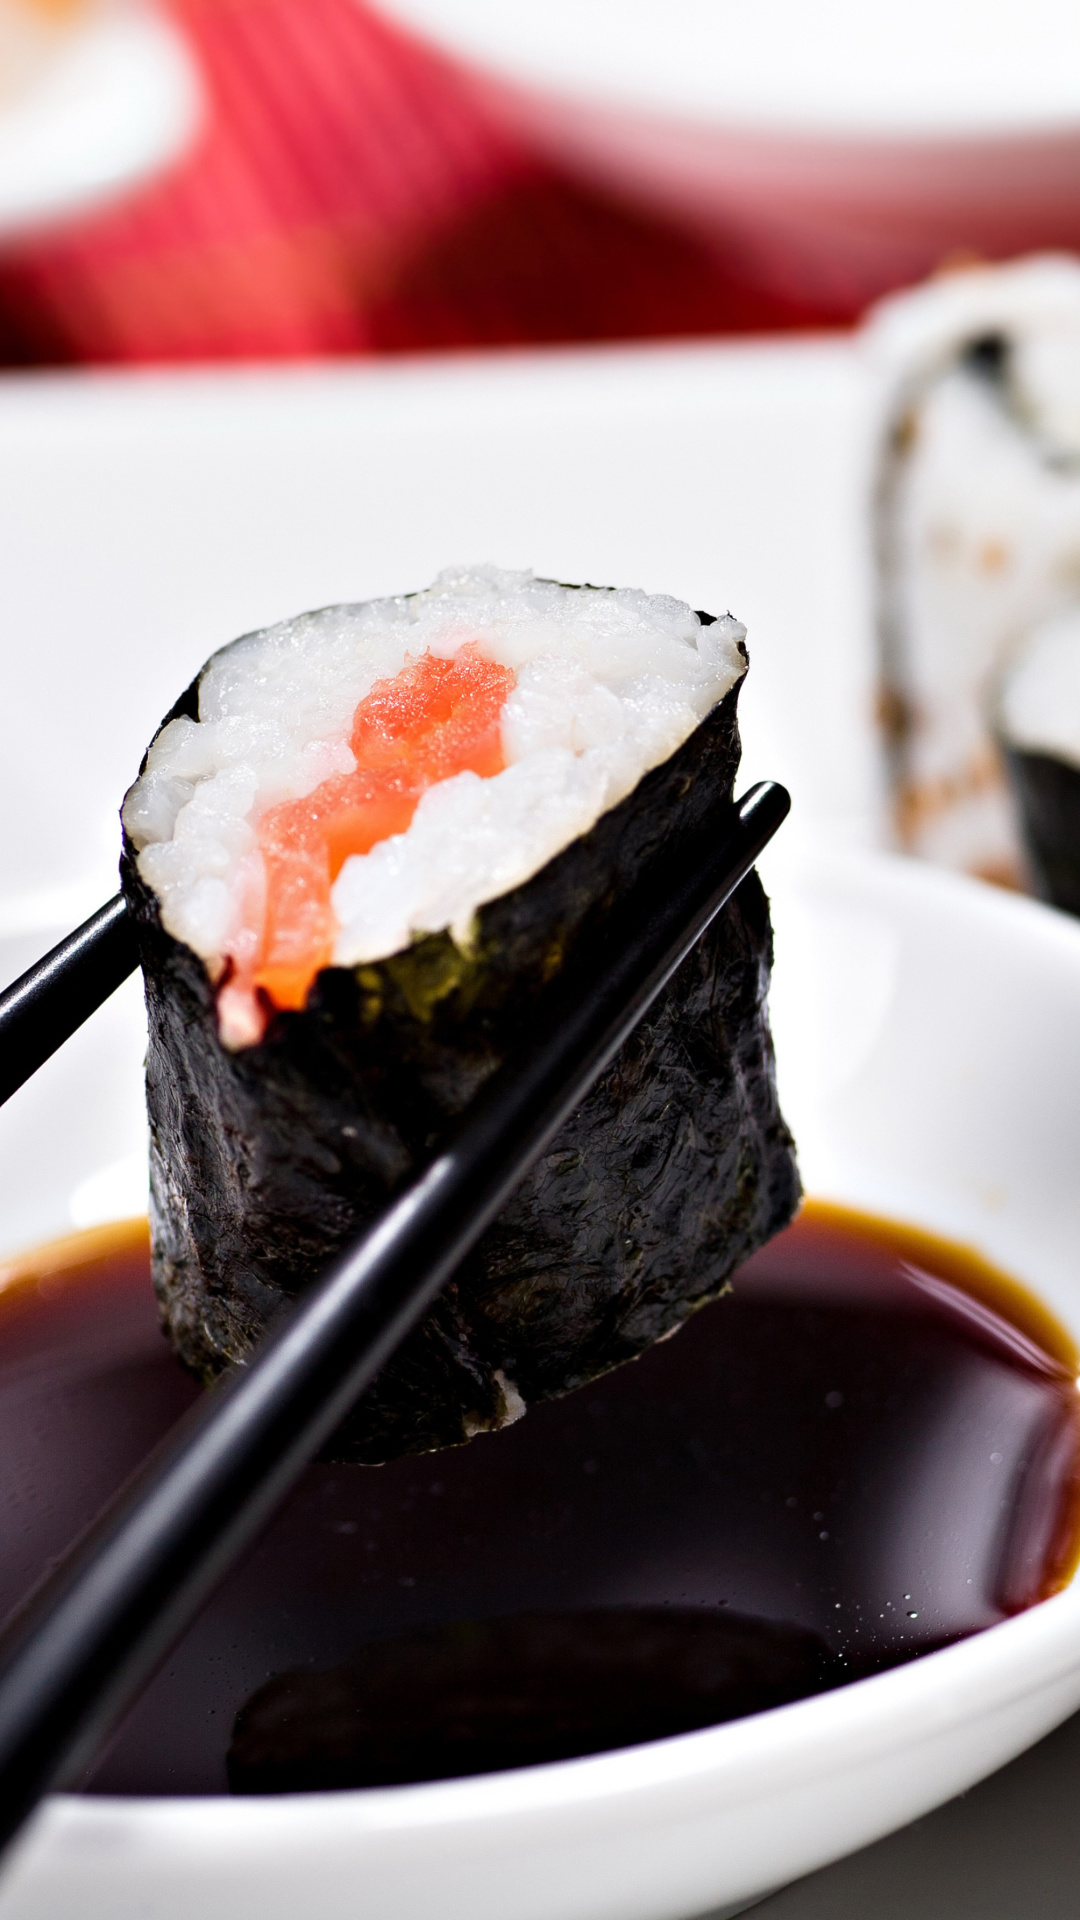 Sfondi Sushi and Chopsticks 1080x1920